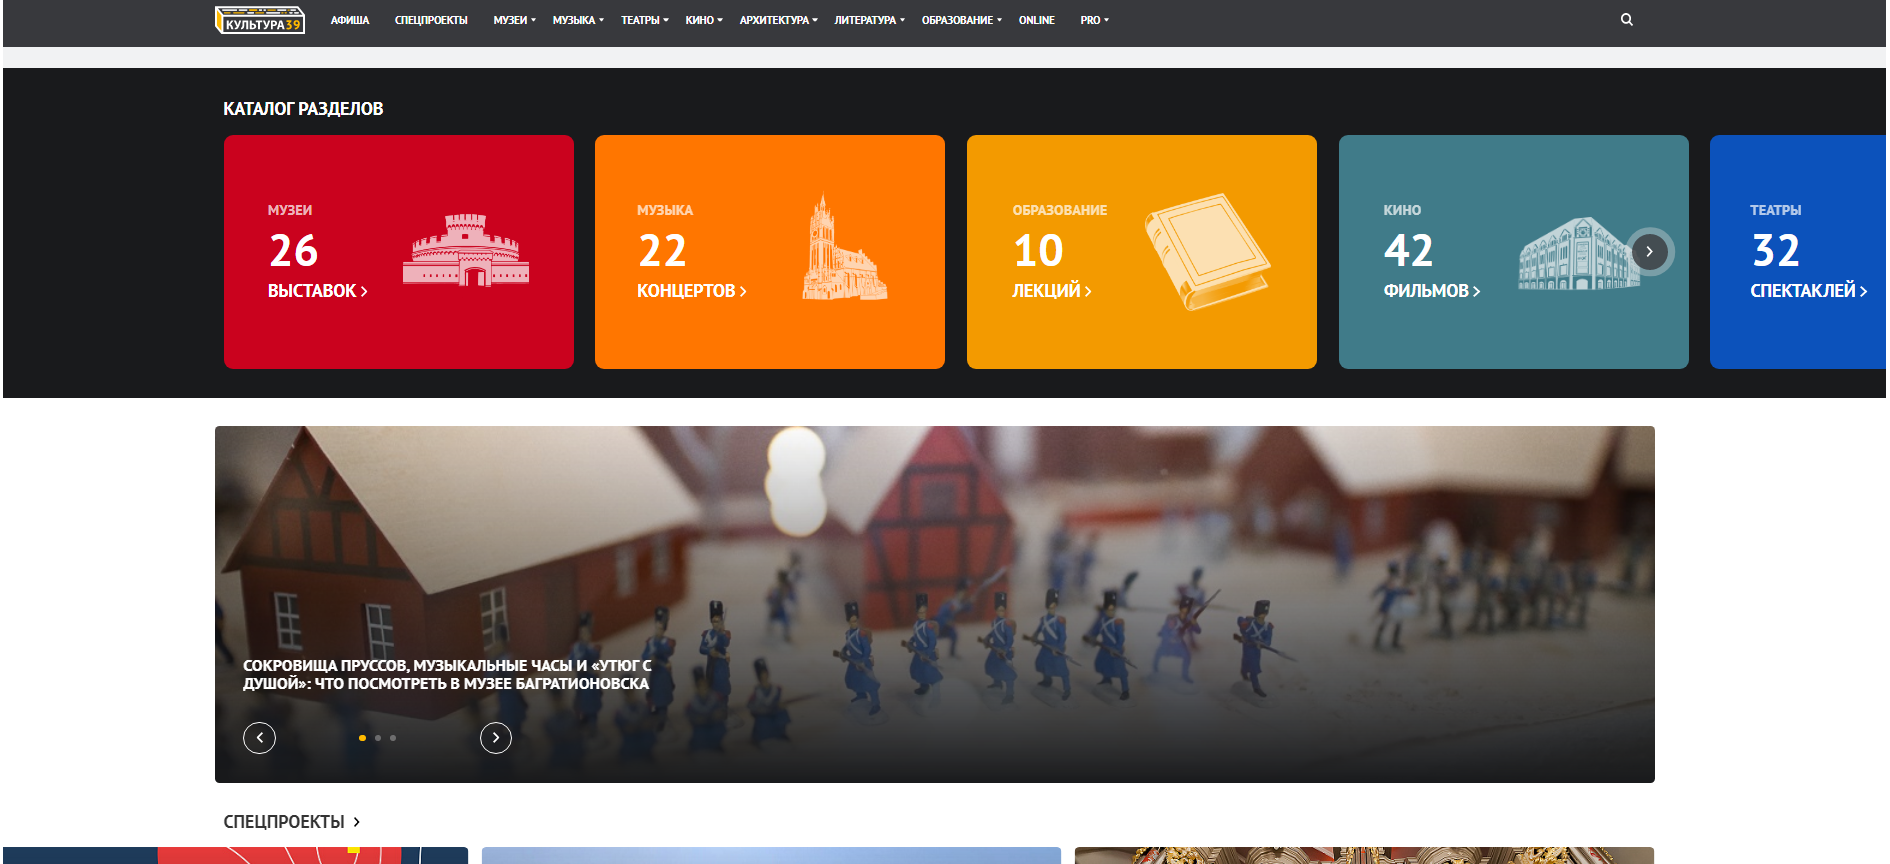 «культура39» — интернет-портал, посвященный культуре калининградской области.